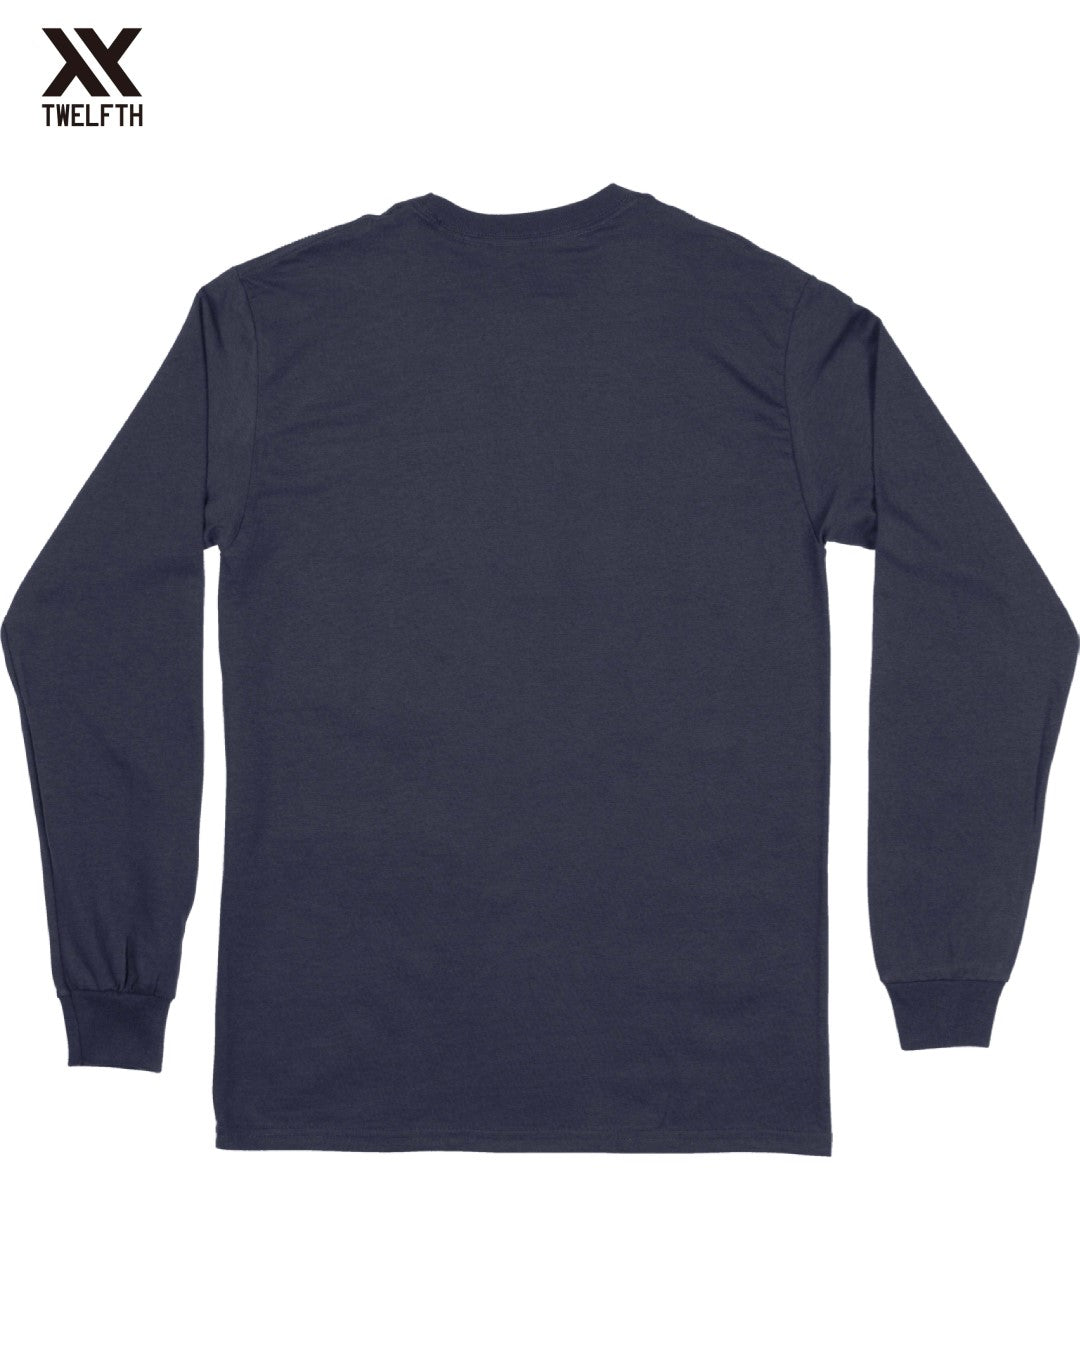 Ajax Crest T-Shirt - Mens - Long Sleeve